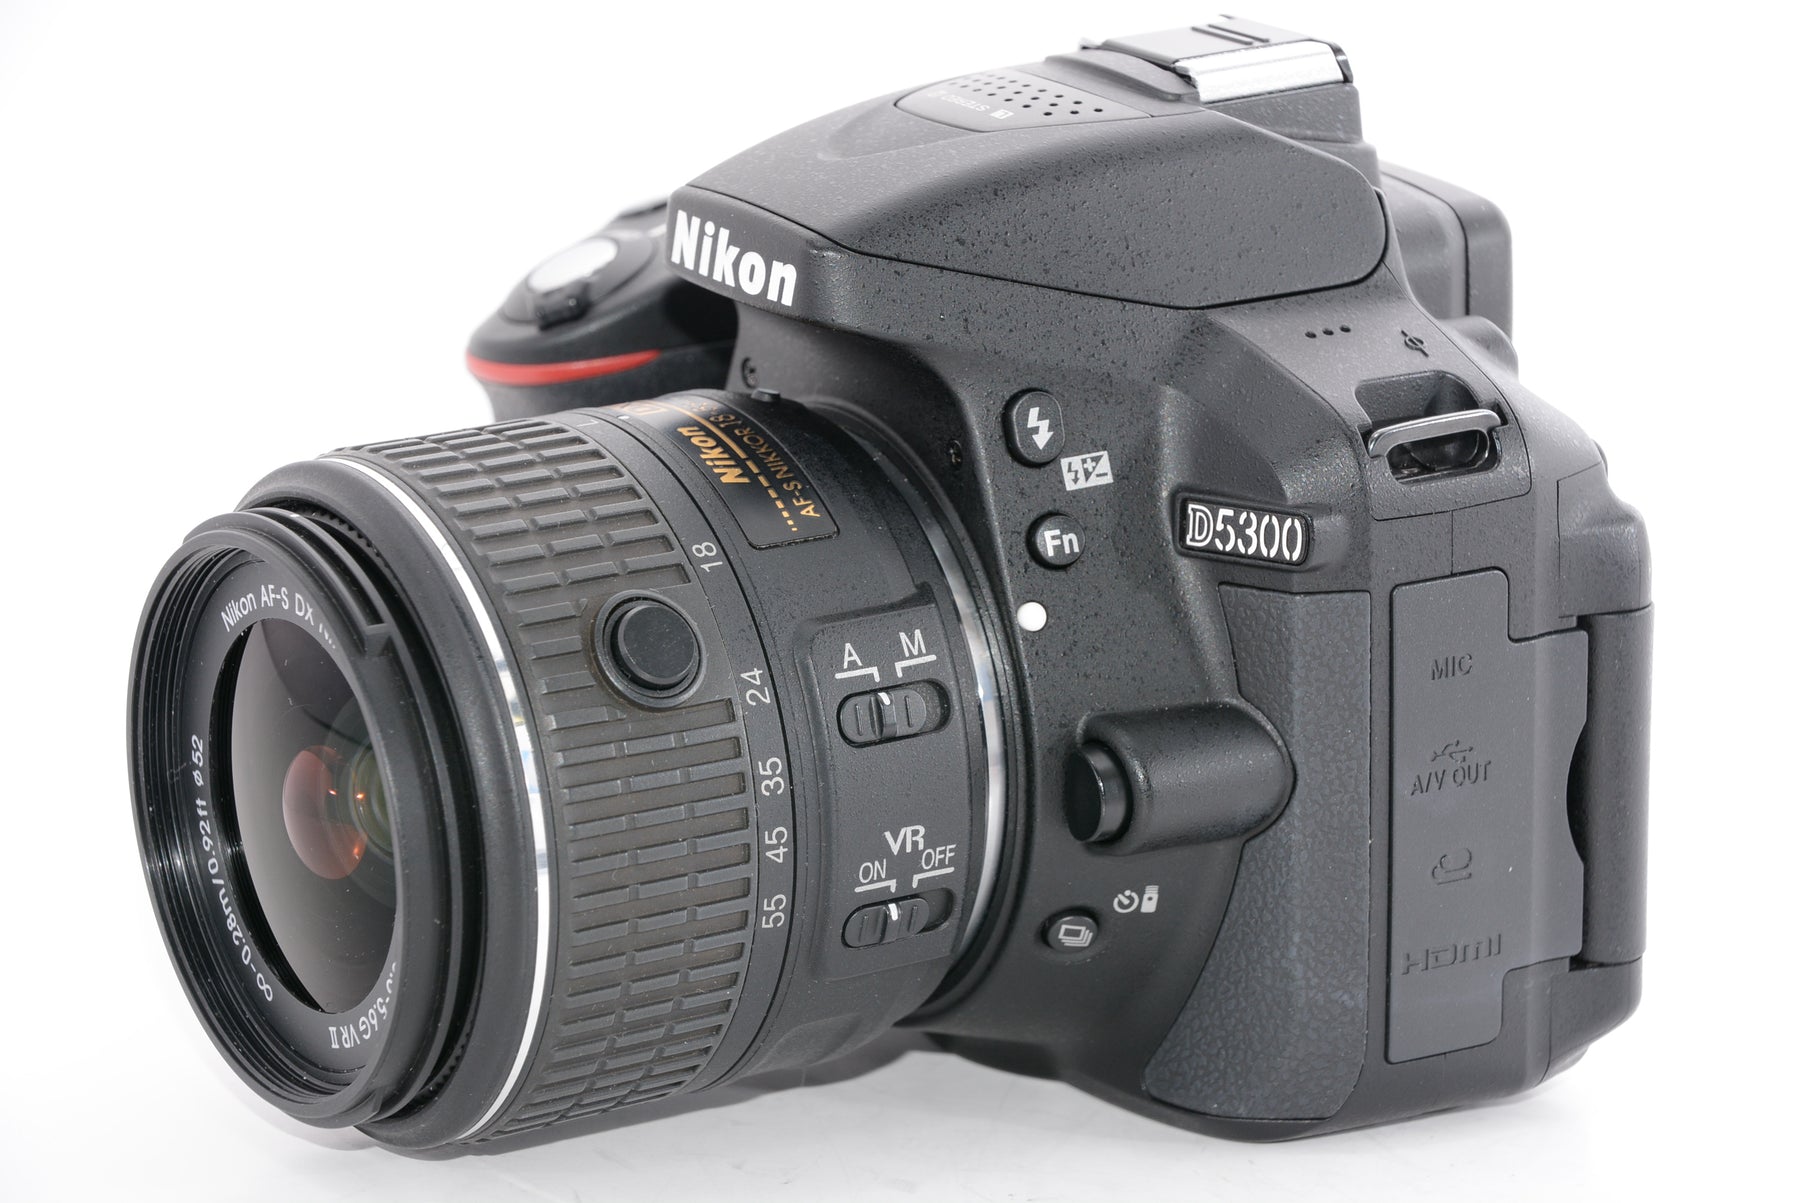 【外観特上級】Nikon デジタル一眼レフカメラ D5300 18-55mm VR II レンズキット ブラック 2400万画素 3.2型液晶  D5300LK18-55VR2BK